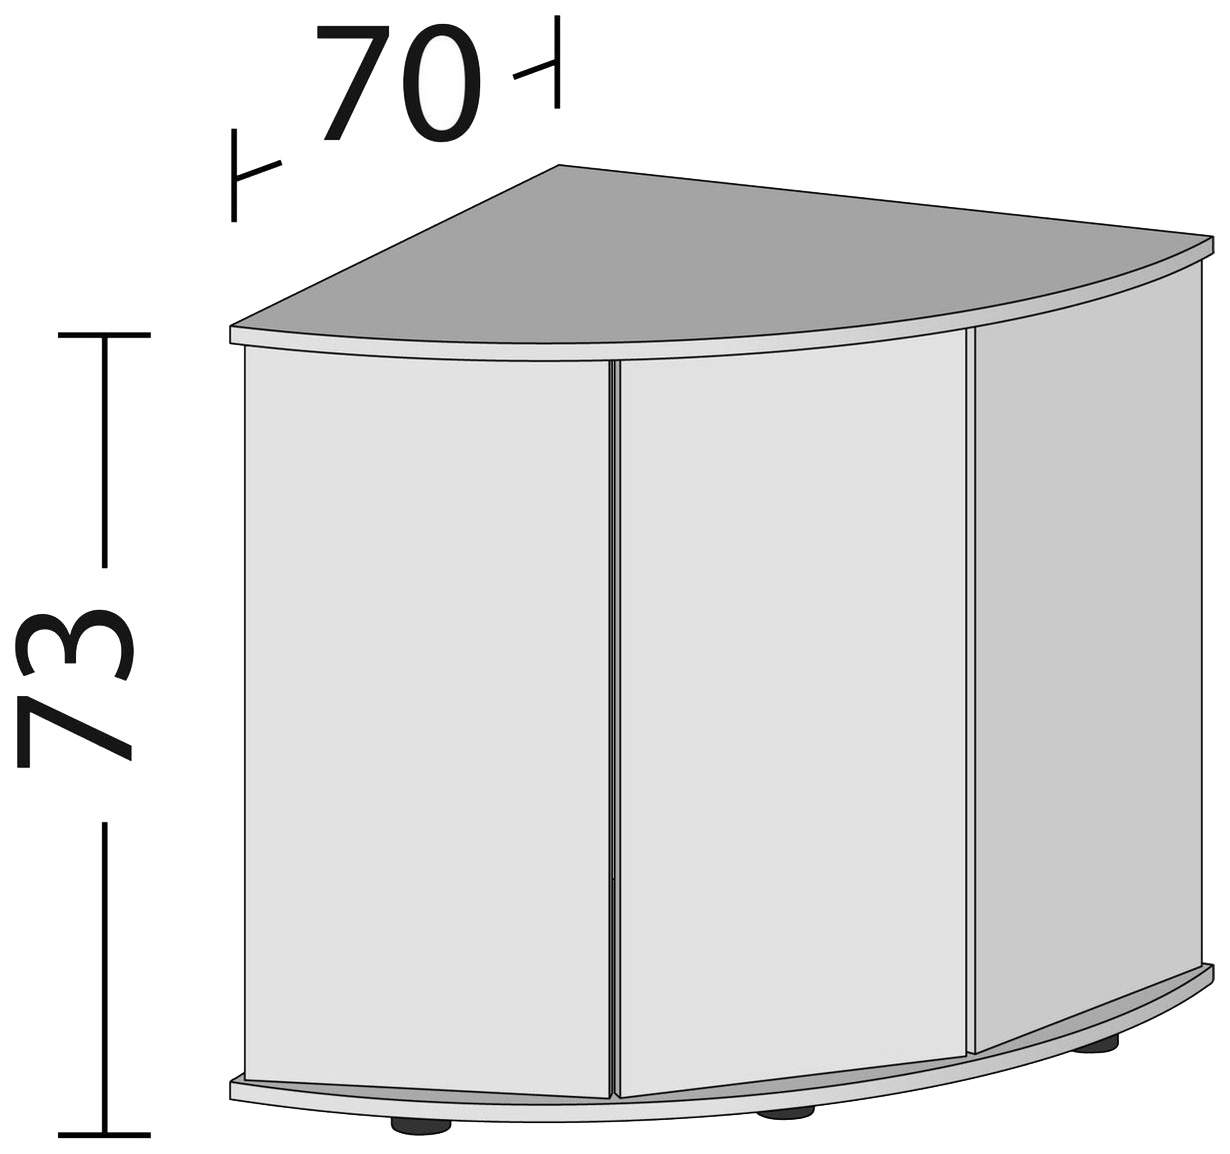 Тумба для аквариума Juwel для Trigon 190, ДСП, белая, 98,5 x 73 x 70 см